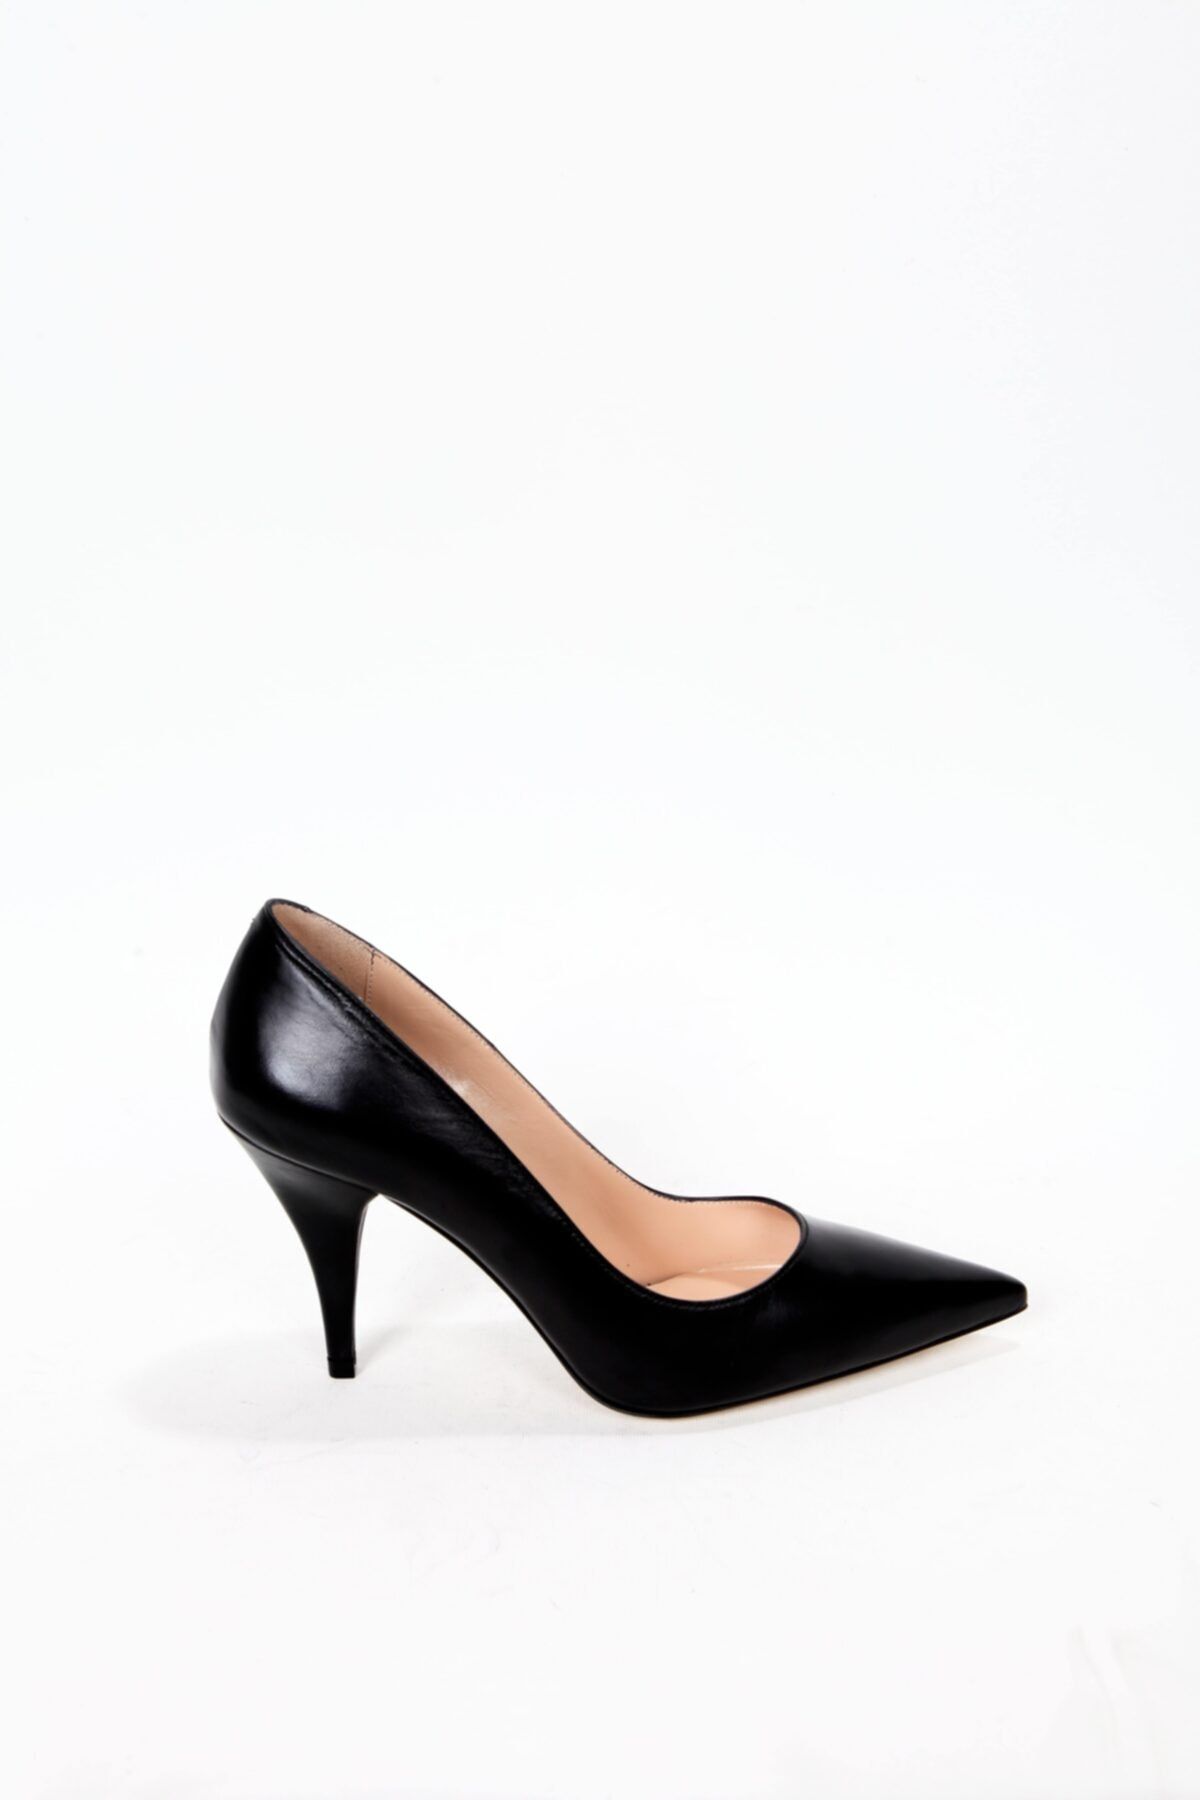 Elisse Shoes Klasik Siyah Topuklu Ayakkabı Hakiki Deri